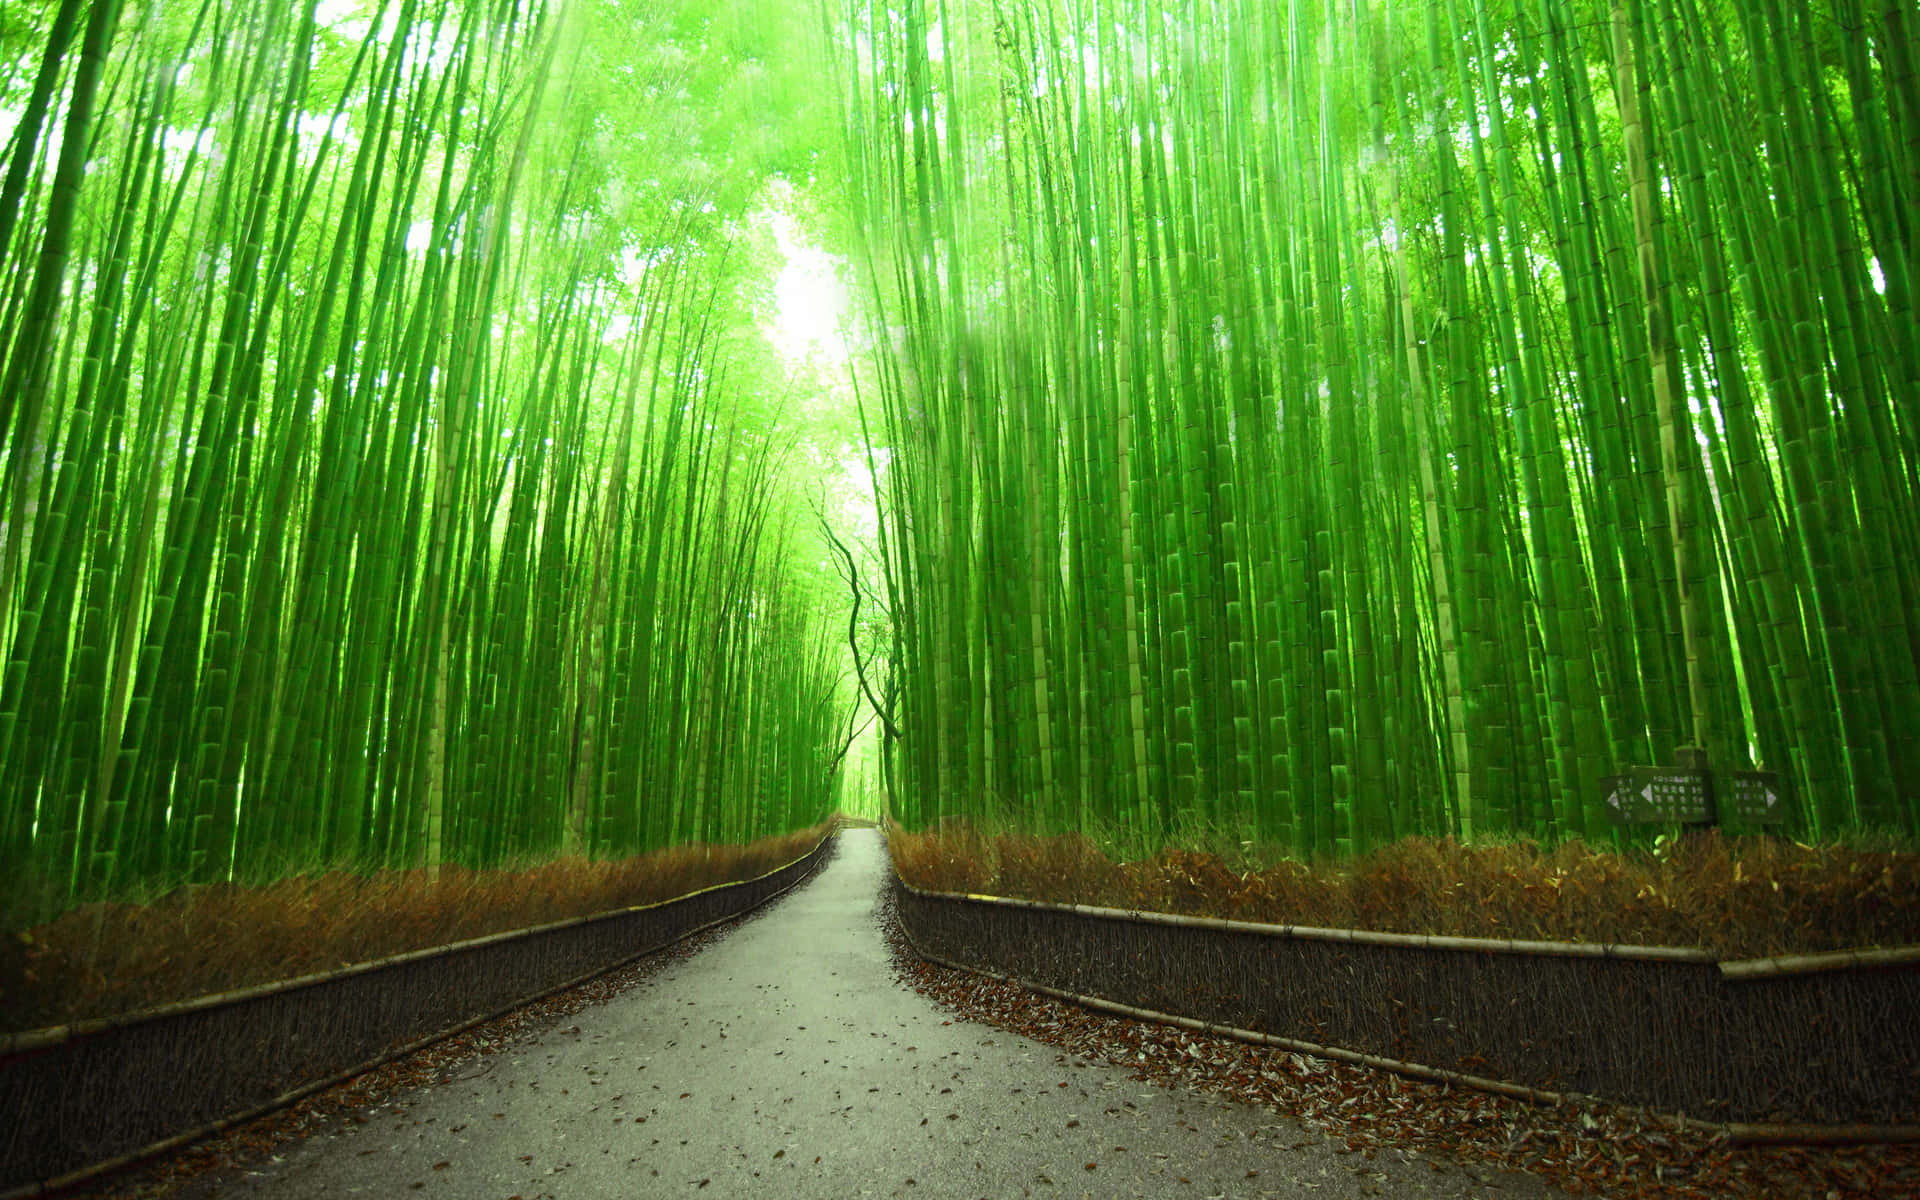 Unboschetto Di Germogli Di Bambù Verde Vibrante.